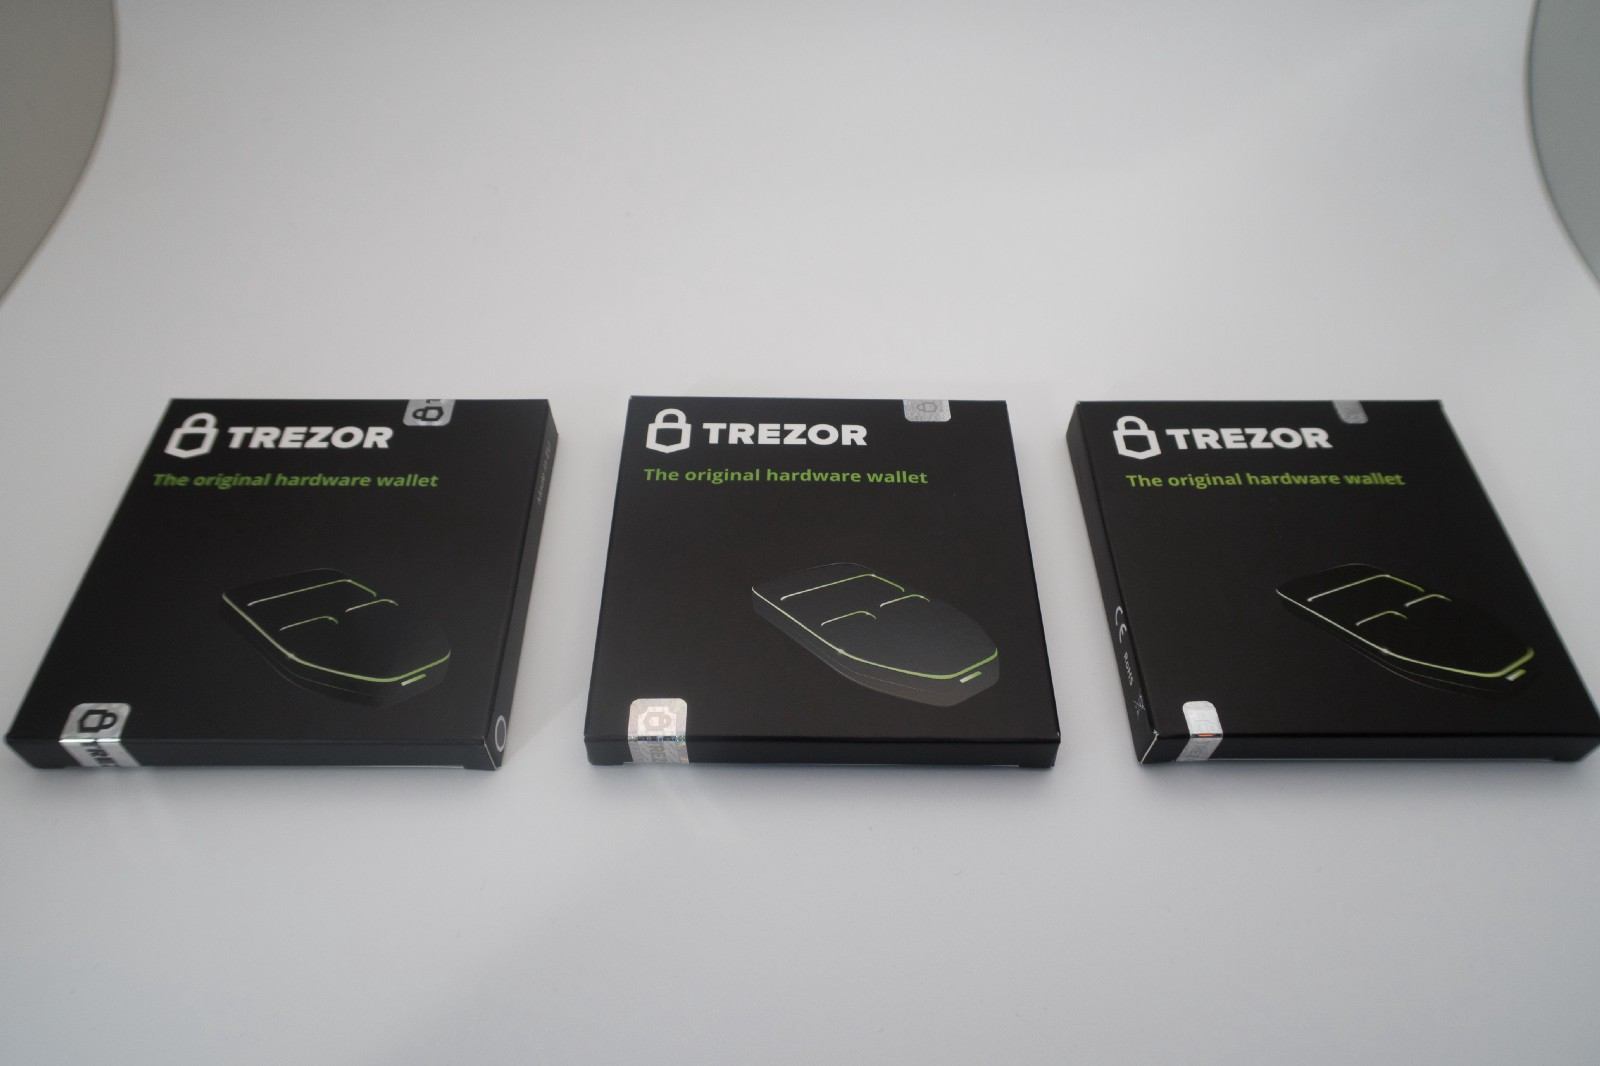 Introducing Trezor Wallet Firmware Updates